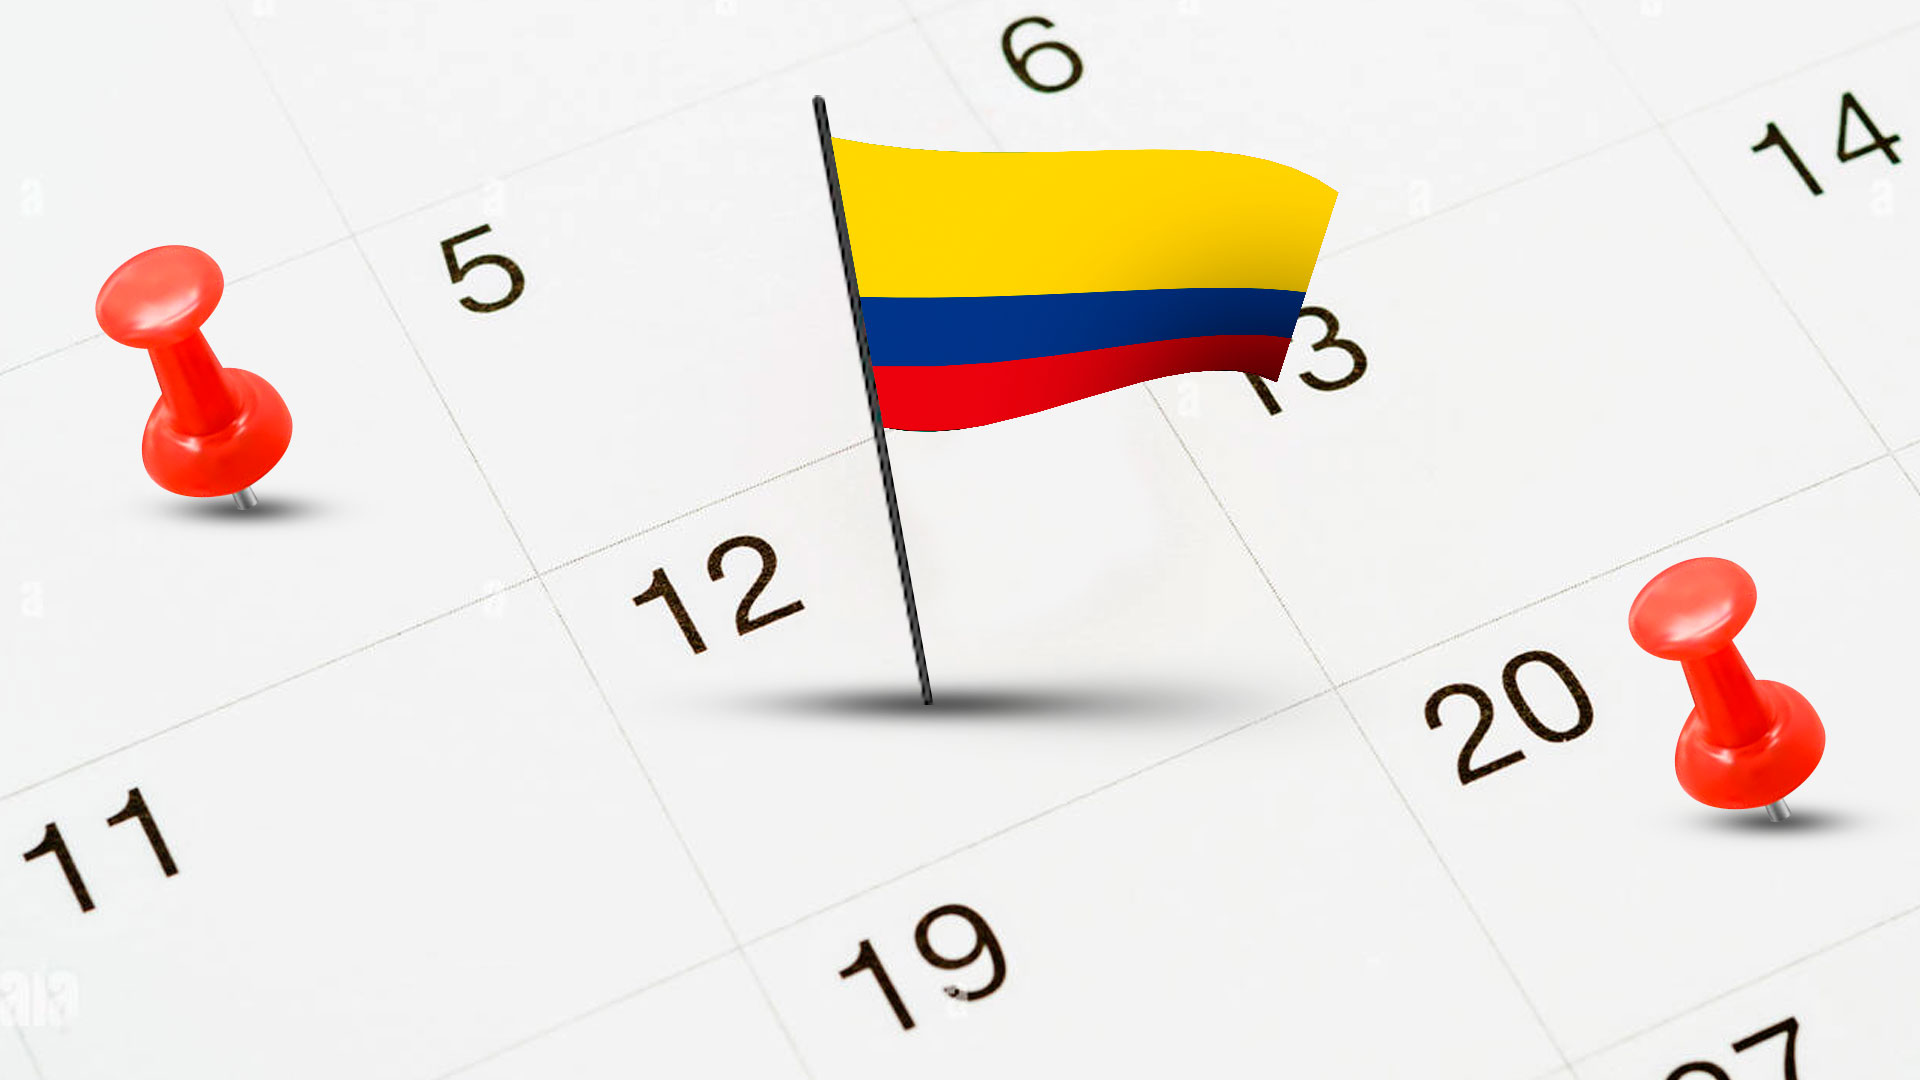 Efemérides de abril en Colombia, conmemoraciones y fechas importantes